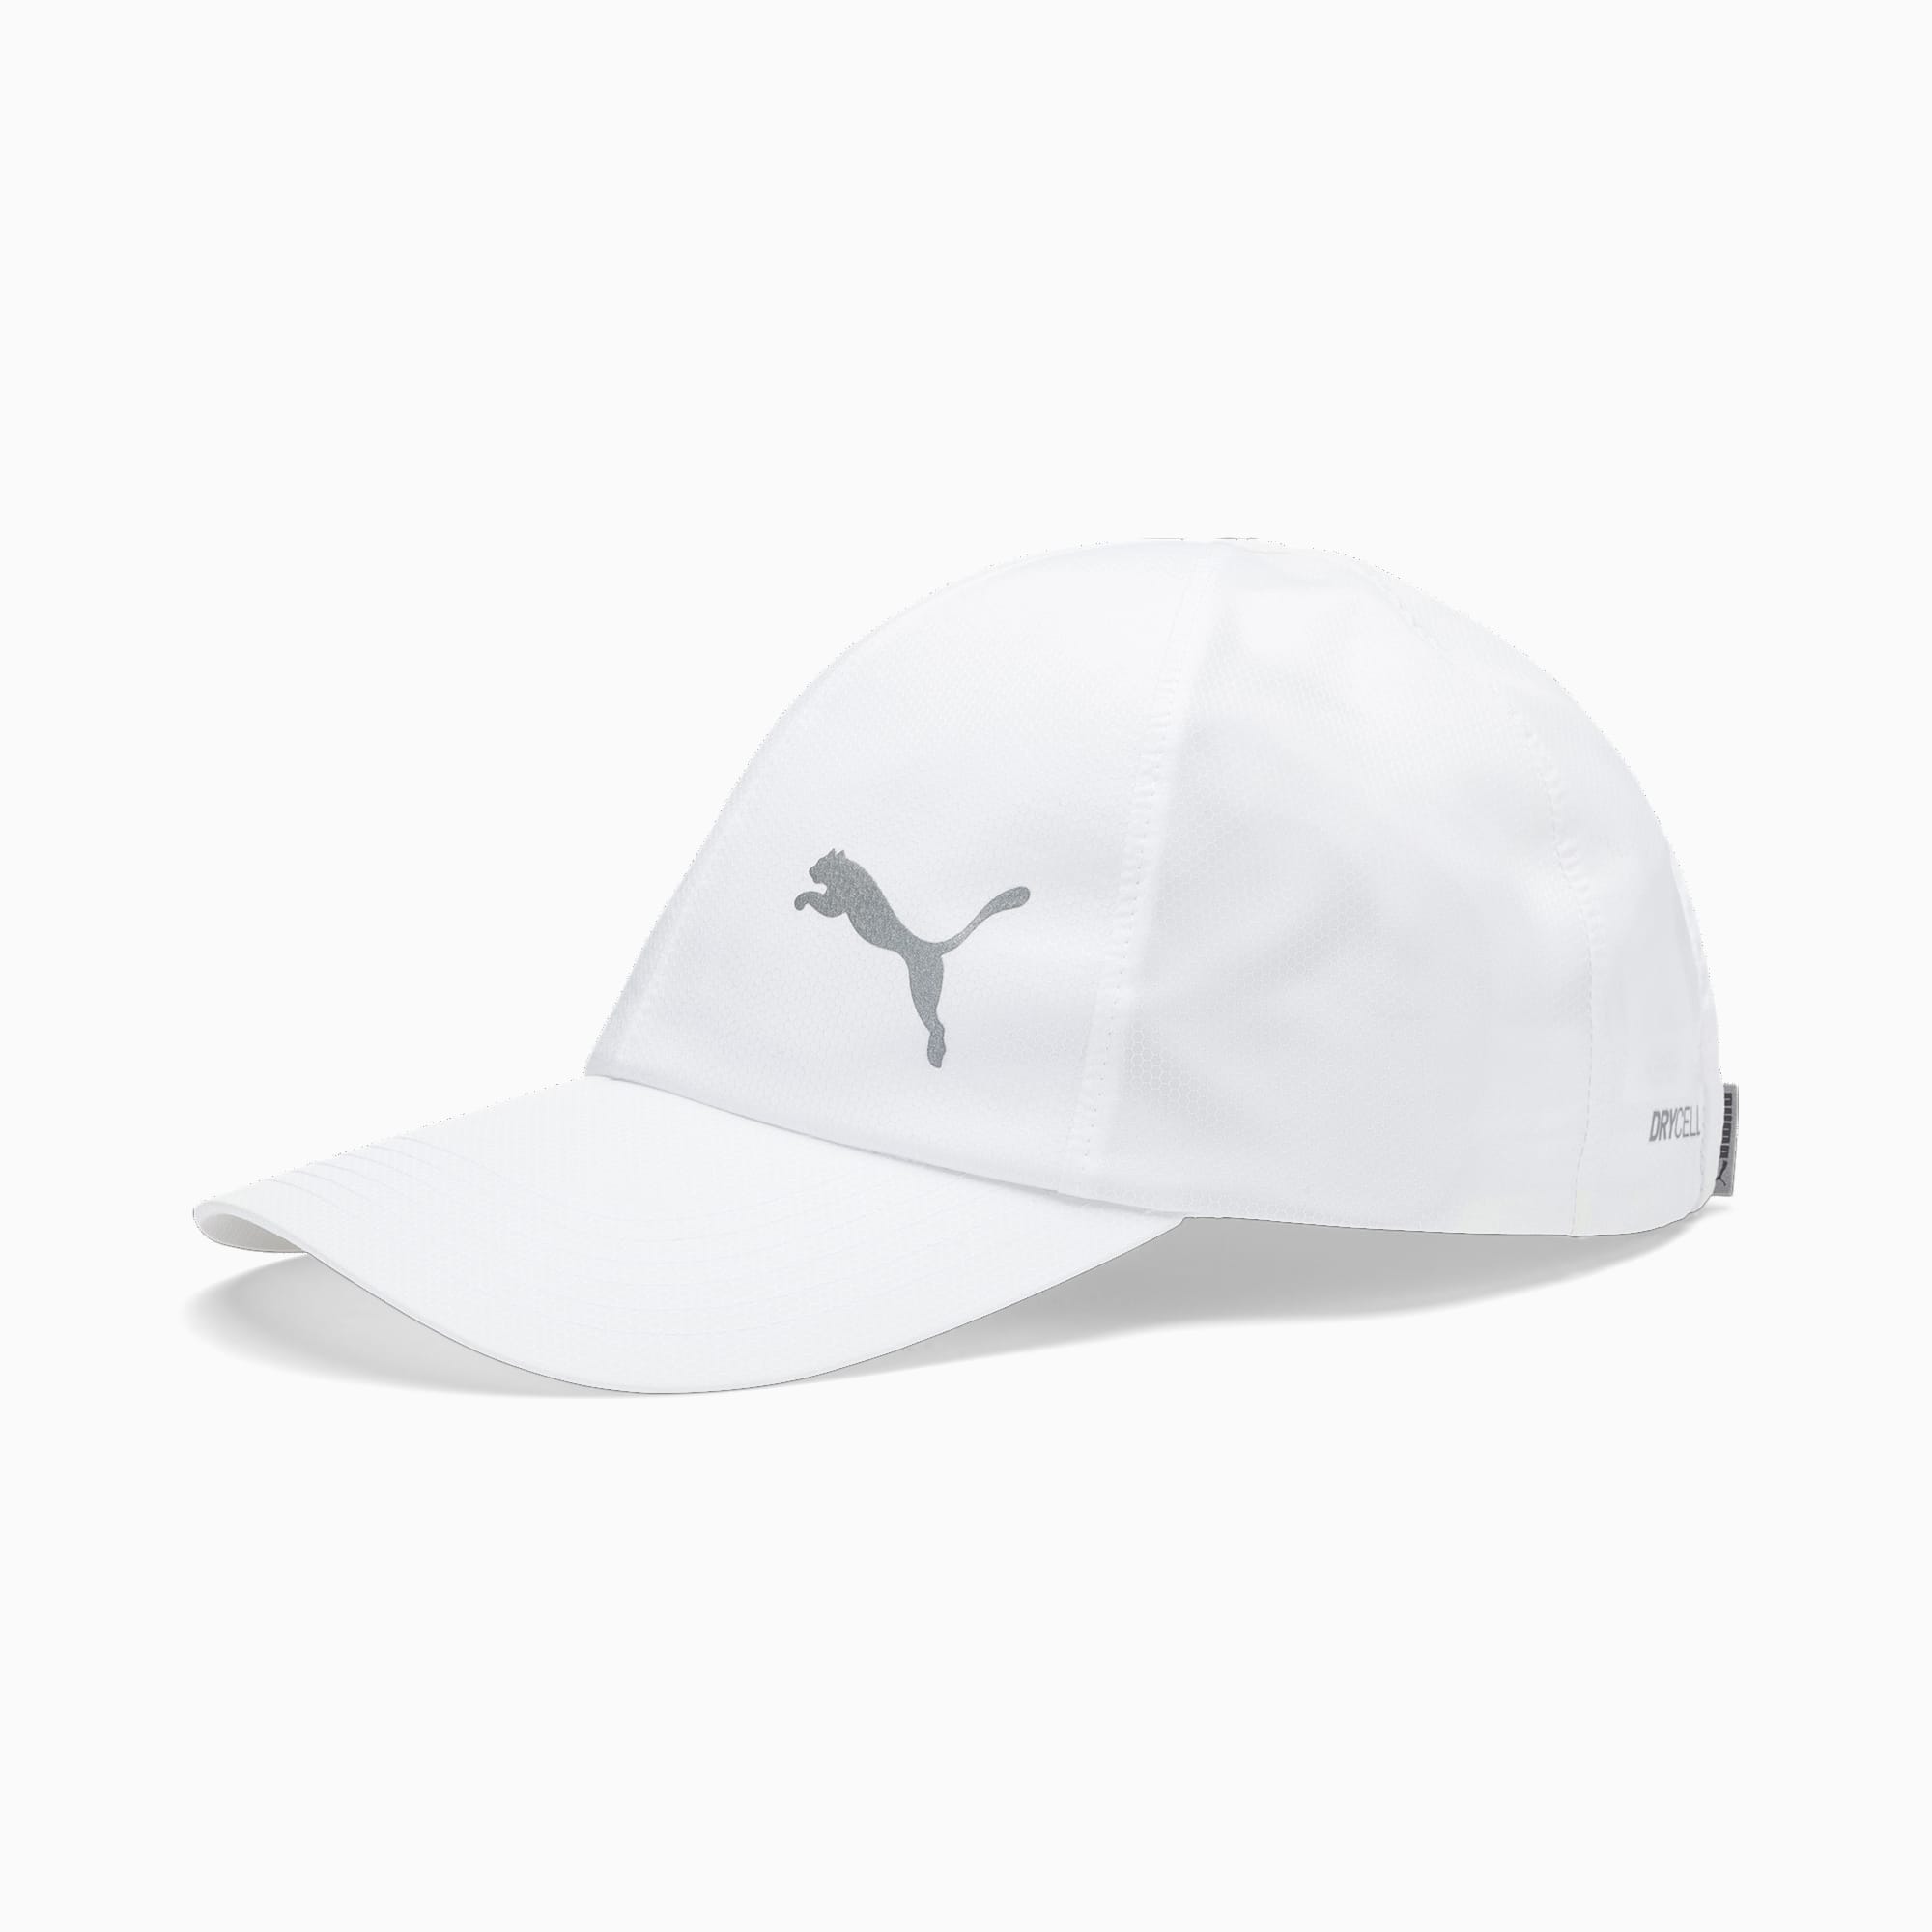 Puma公式 ポリコットン ランニング キャップ 帽子 ユニセックス メンズ レディース Puma White プーマ アクセサリー プーマ